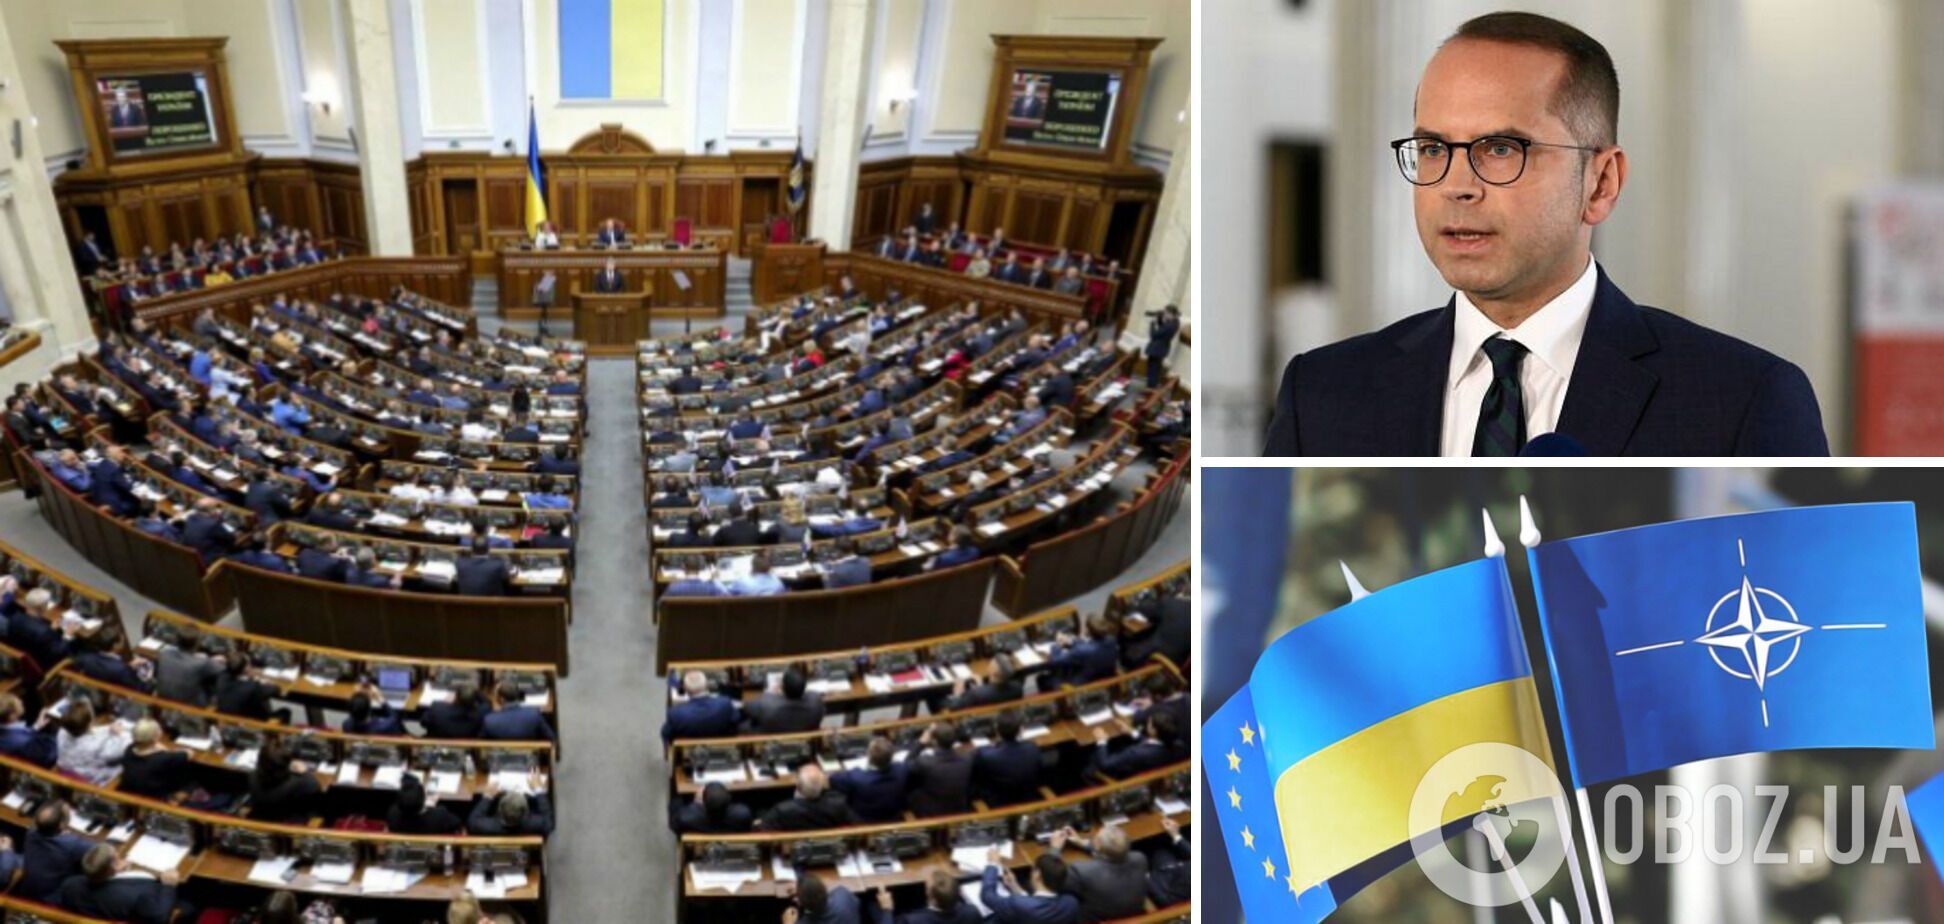 'Украина должна стать членом НАТО': президент Парламентской ассамблеи Альянса выступил в Совете